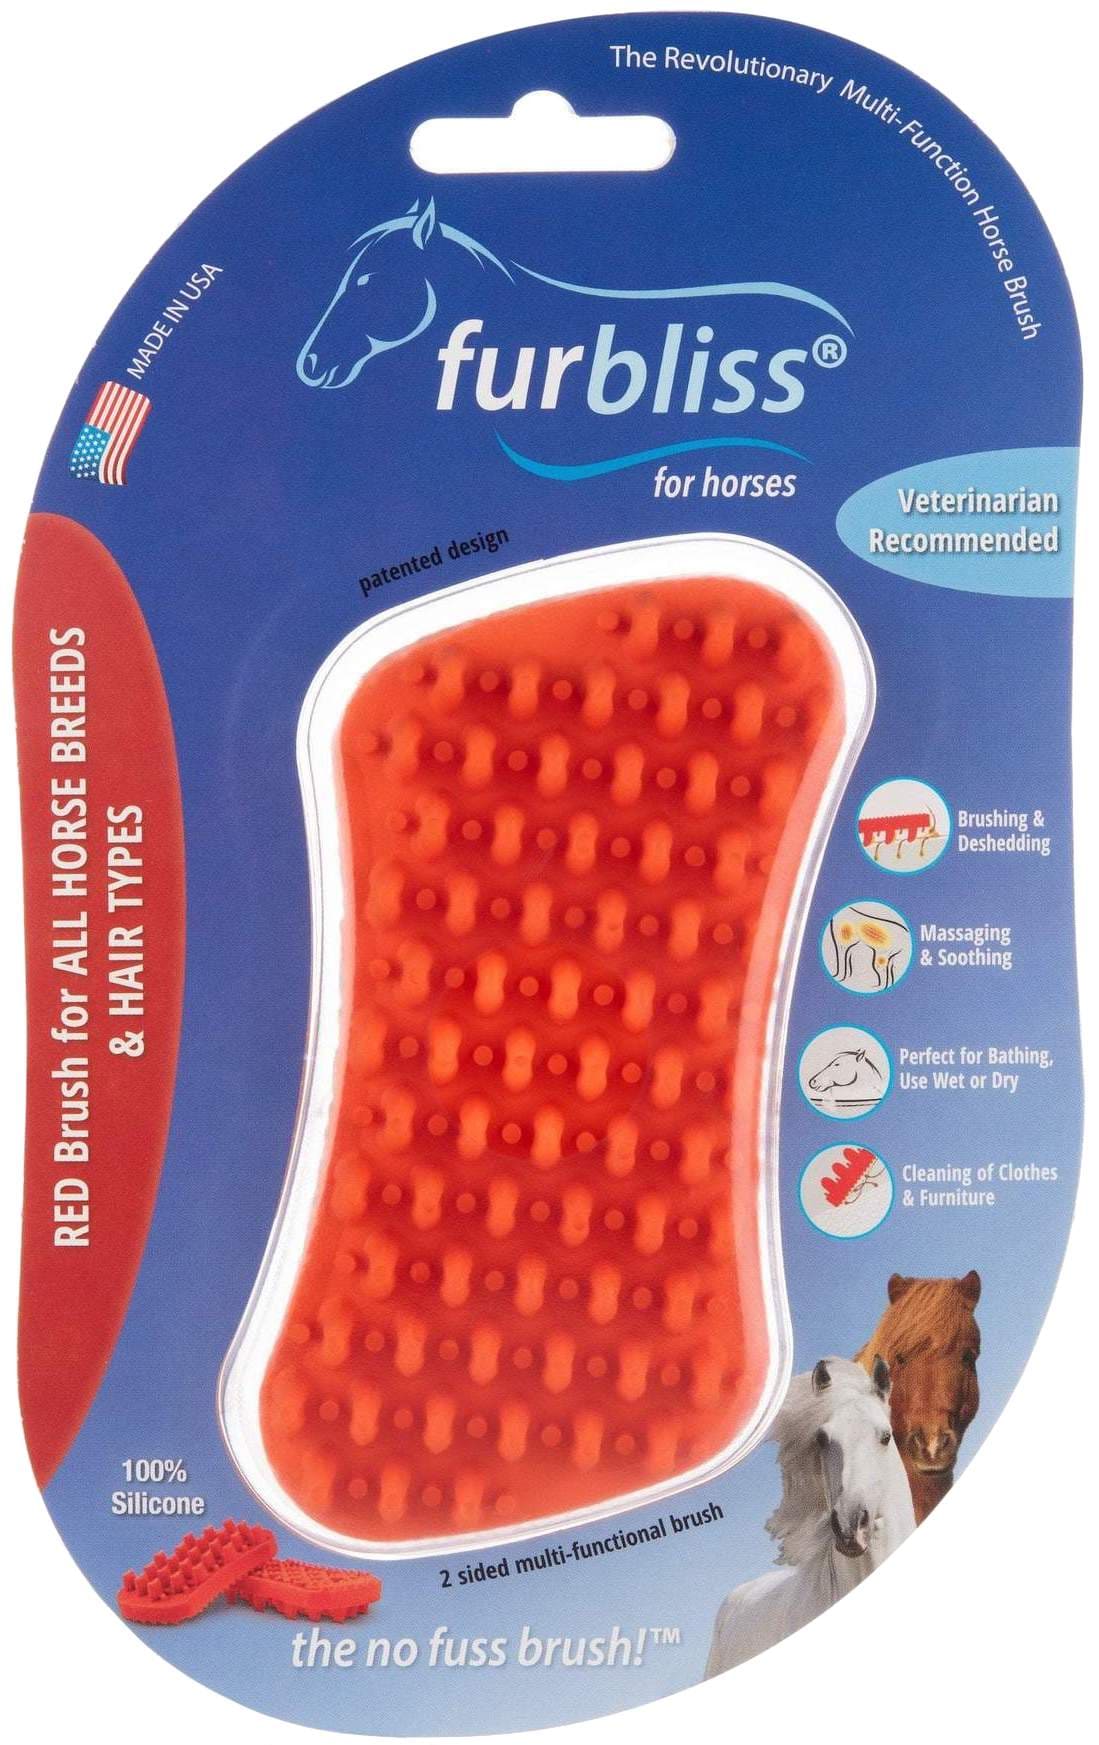 Furbliss Multi-Functional Brush for Horses